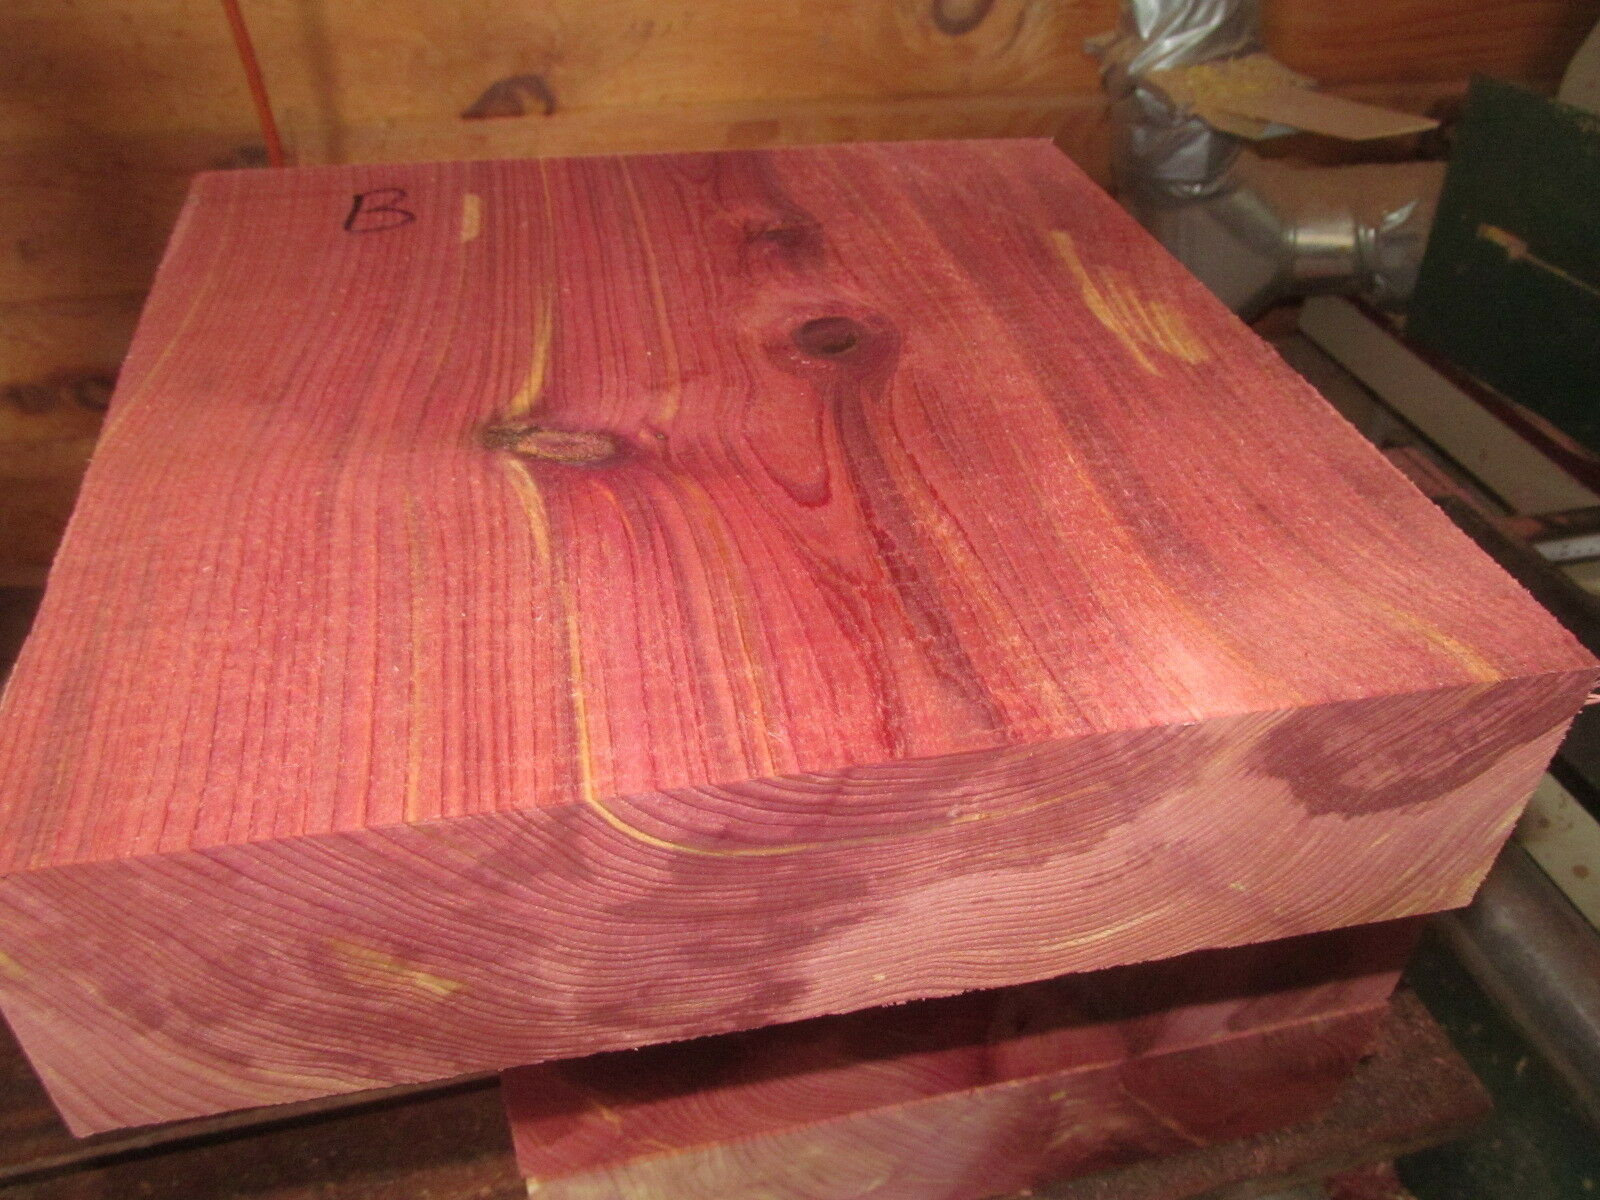 Красное дерево подгон 3. Красный канадский кедр. Красный кедр дерево. Красный кедр древесина. Древесина красное дерево красный Падук.